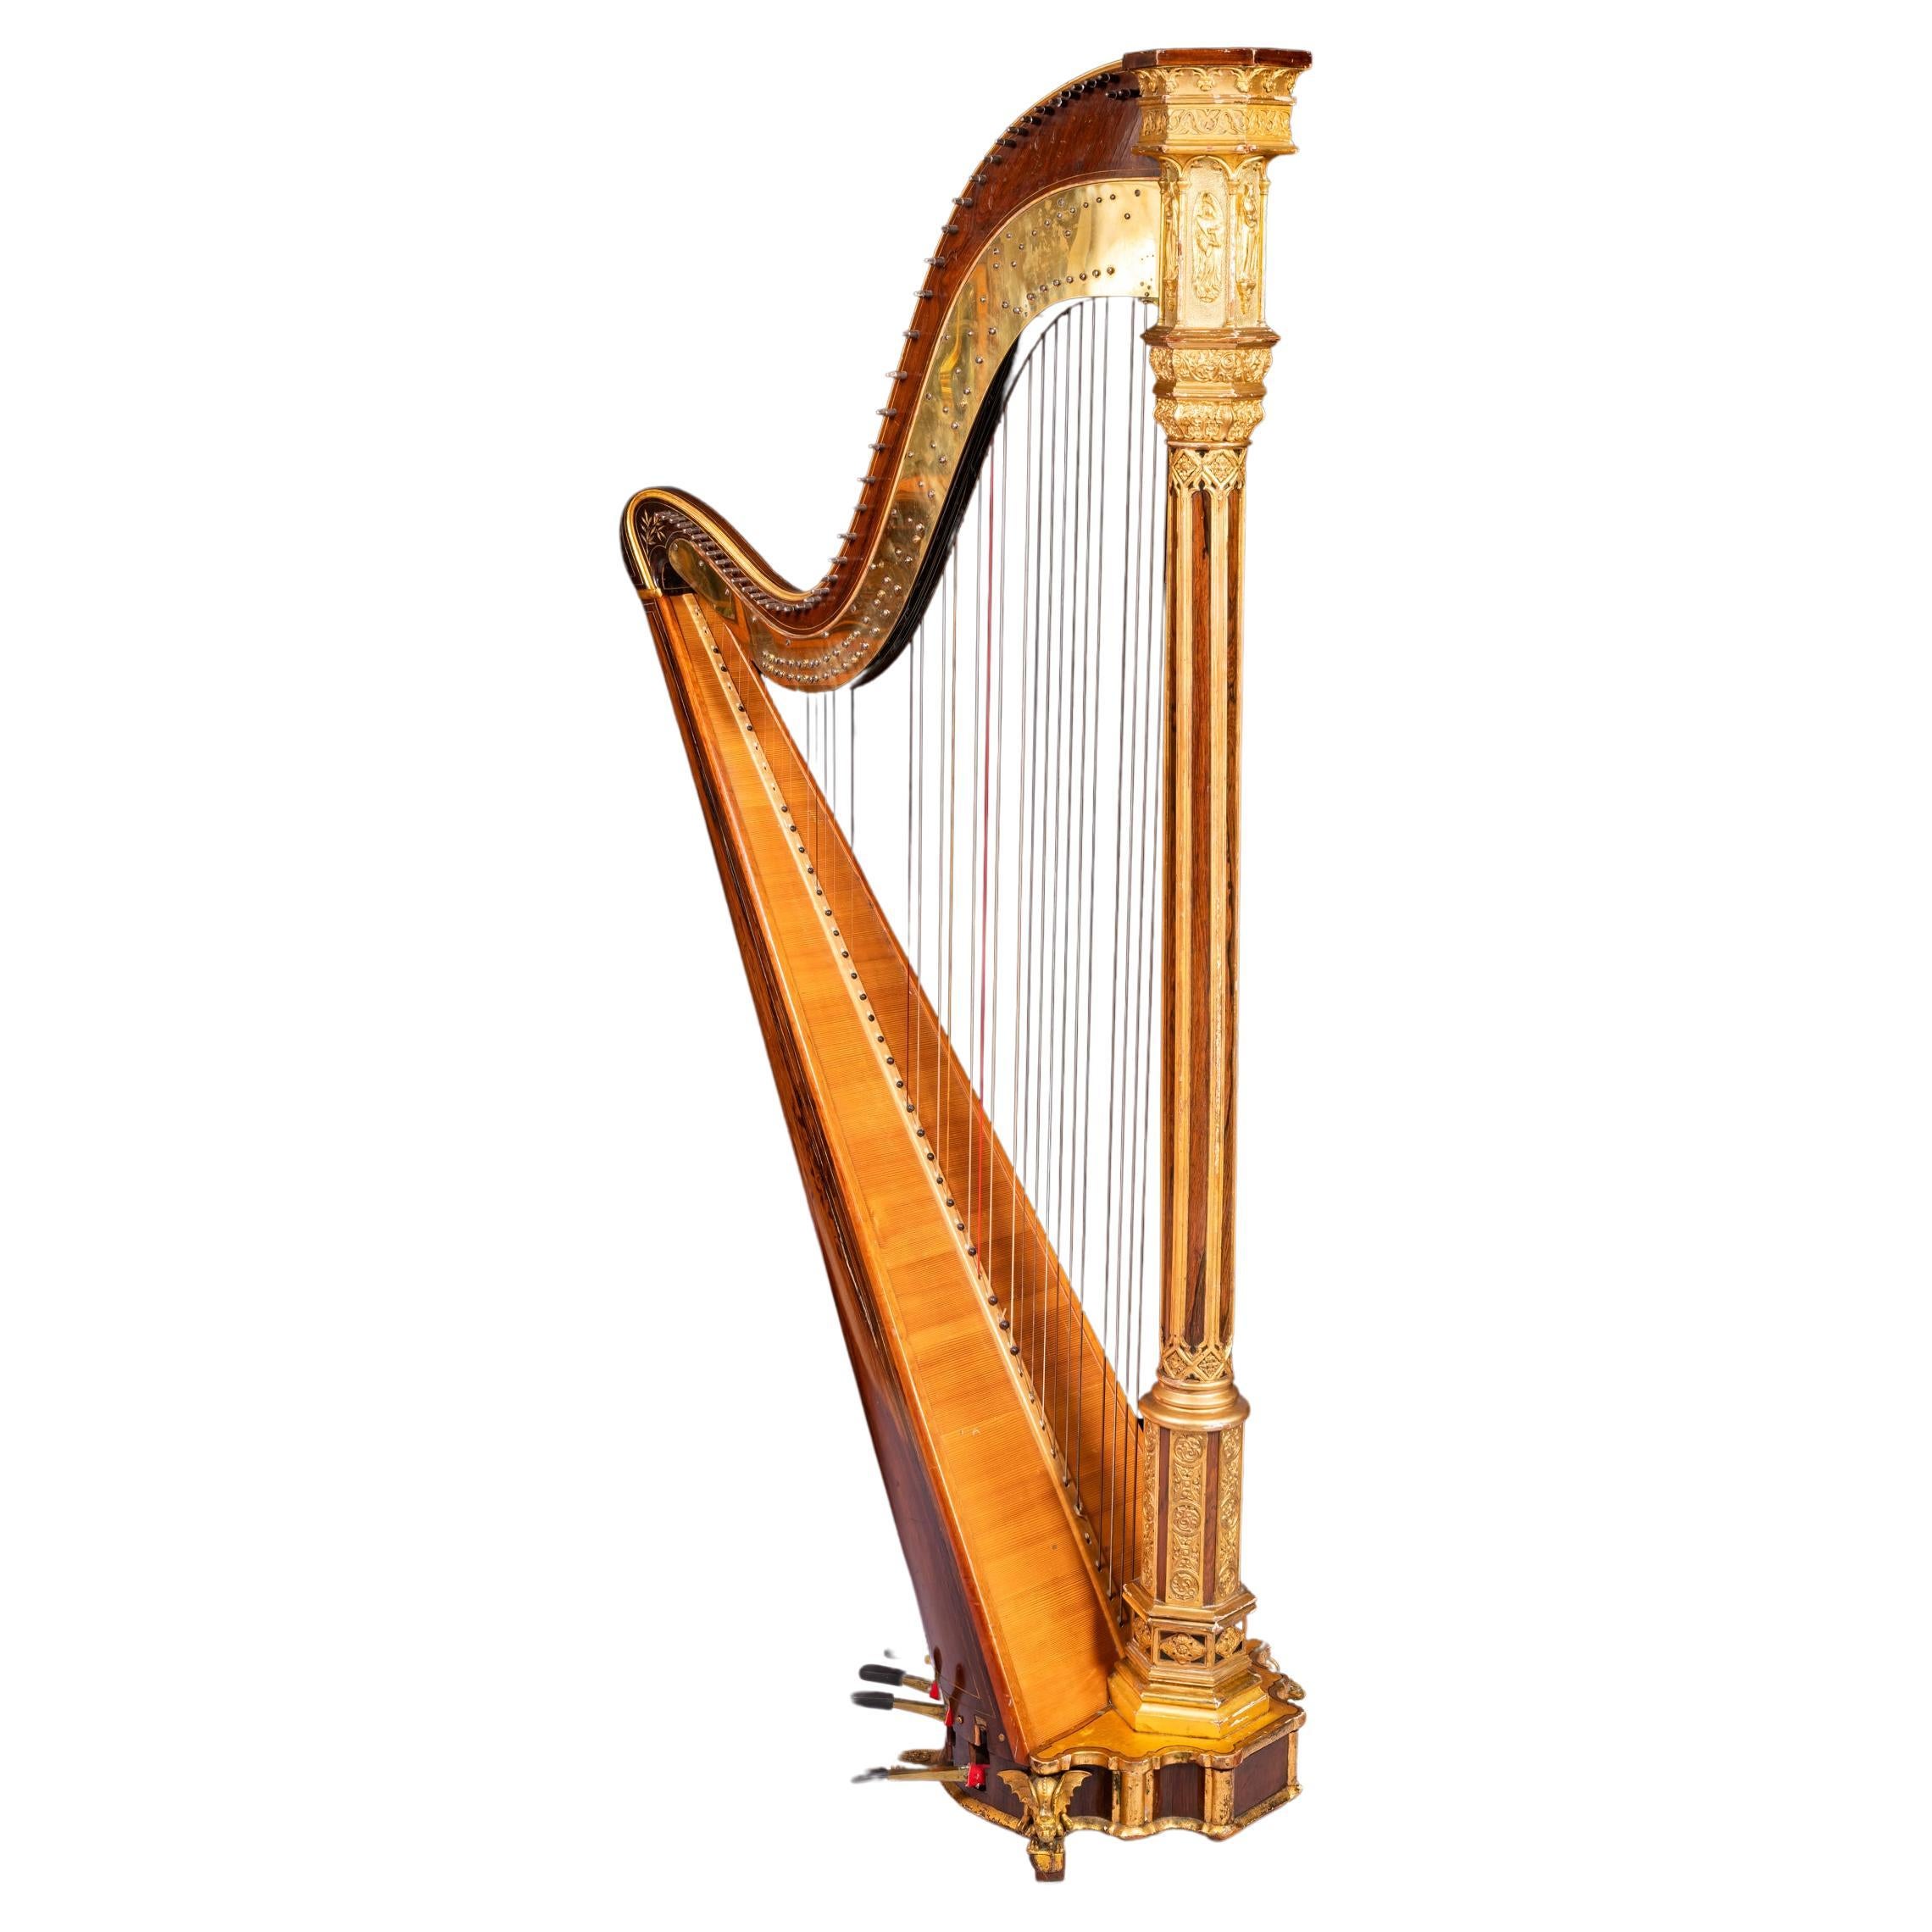 Harpe néo-gothique dorée du début du 19ème siècle par Sebastian Erard